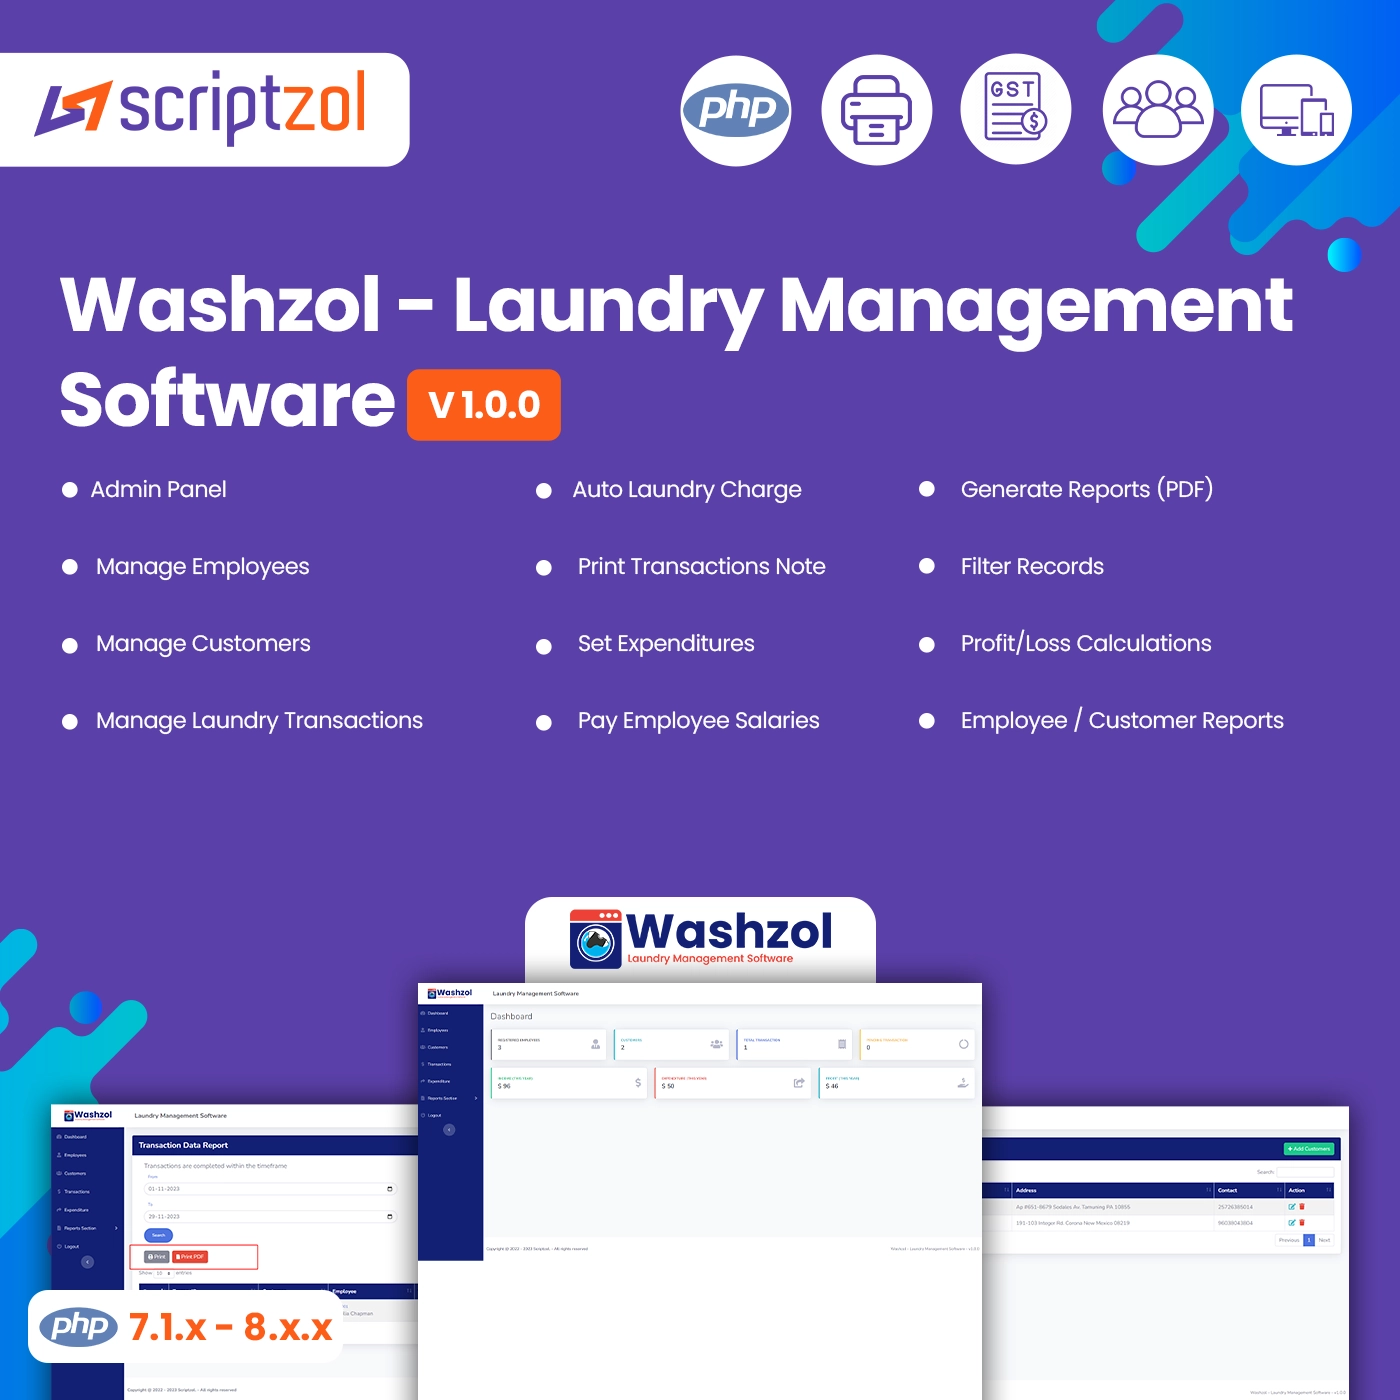 Washzol - Laundry Management Software